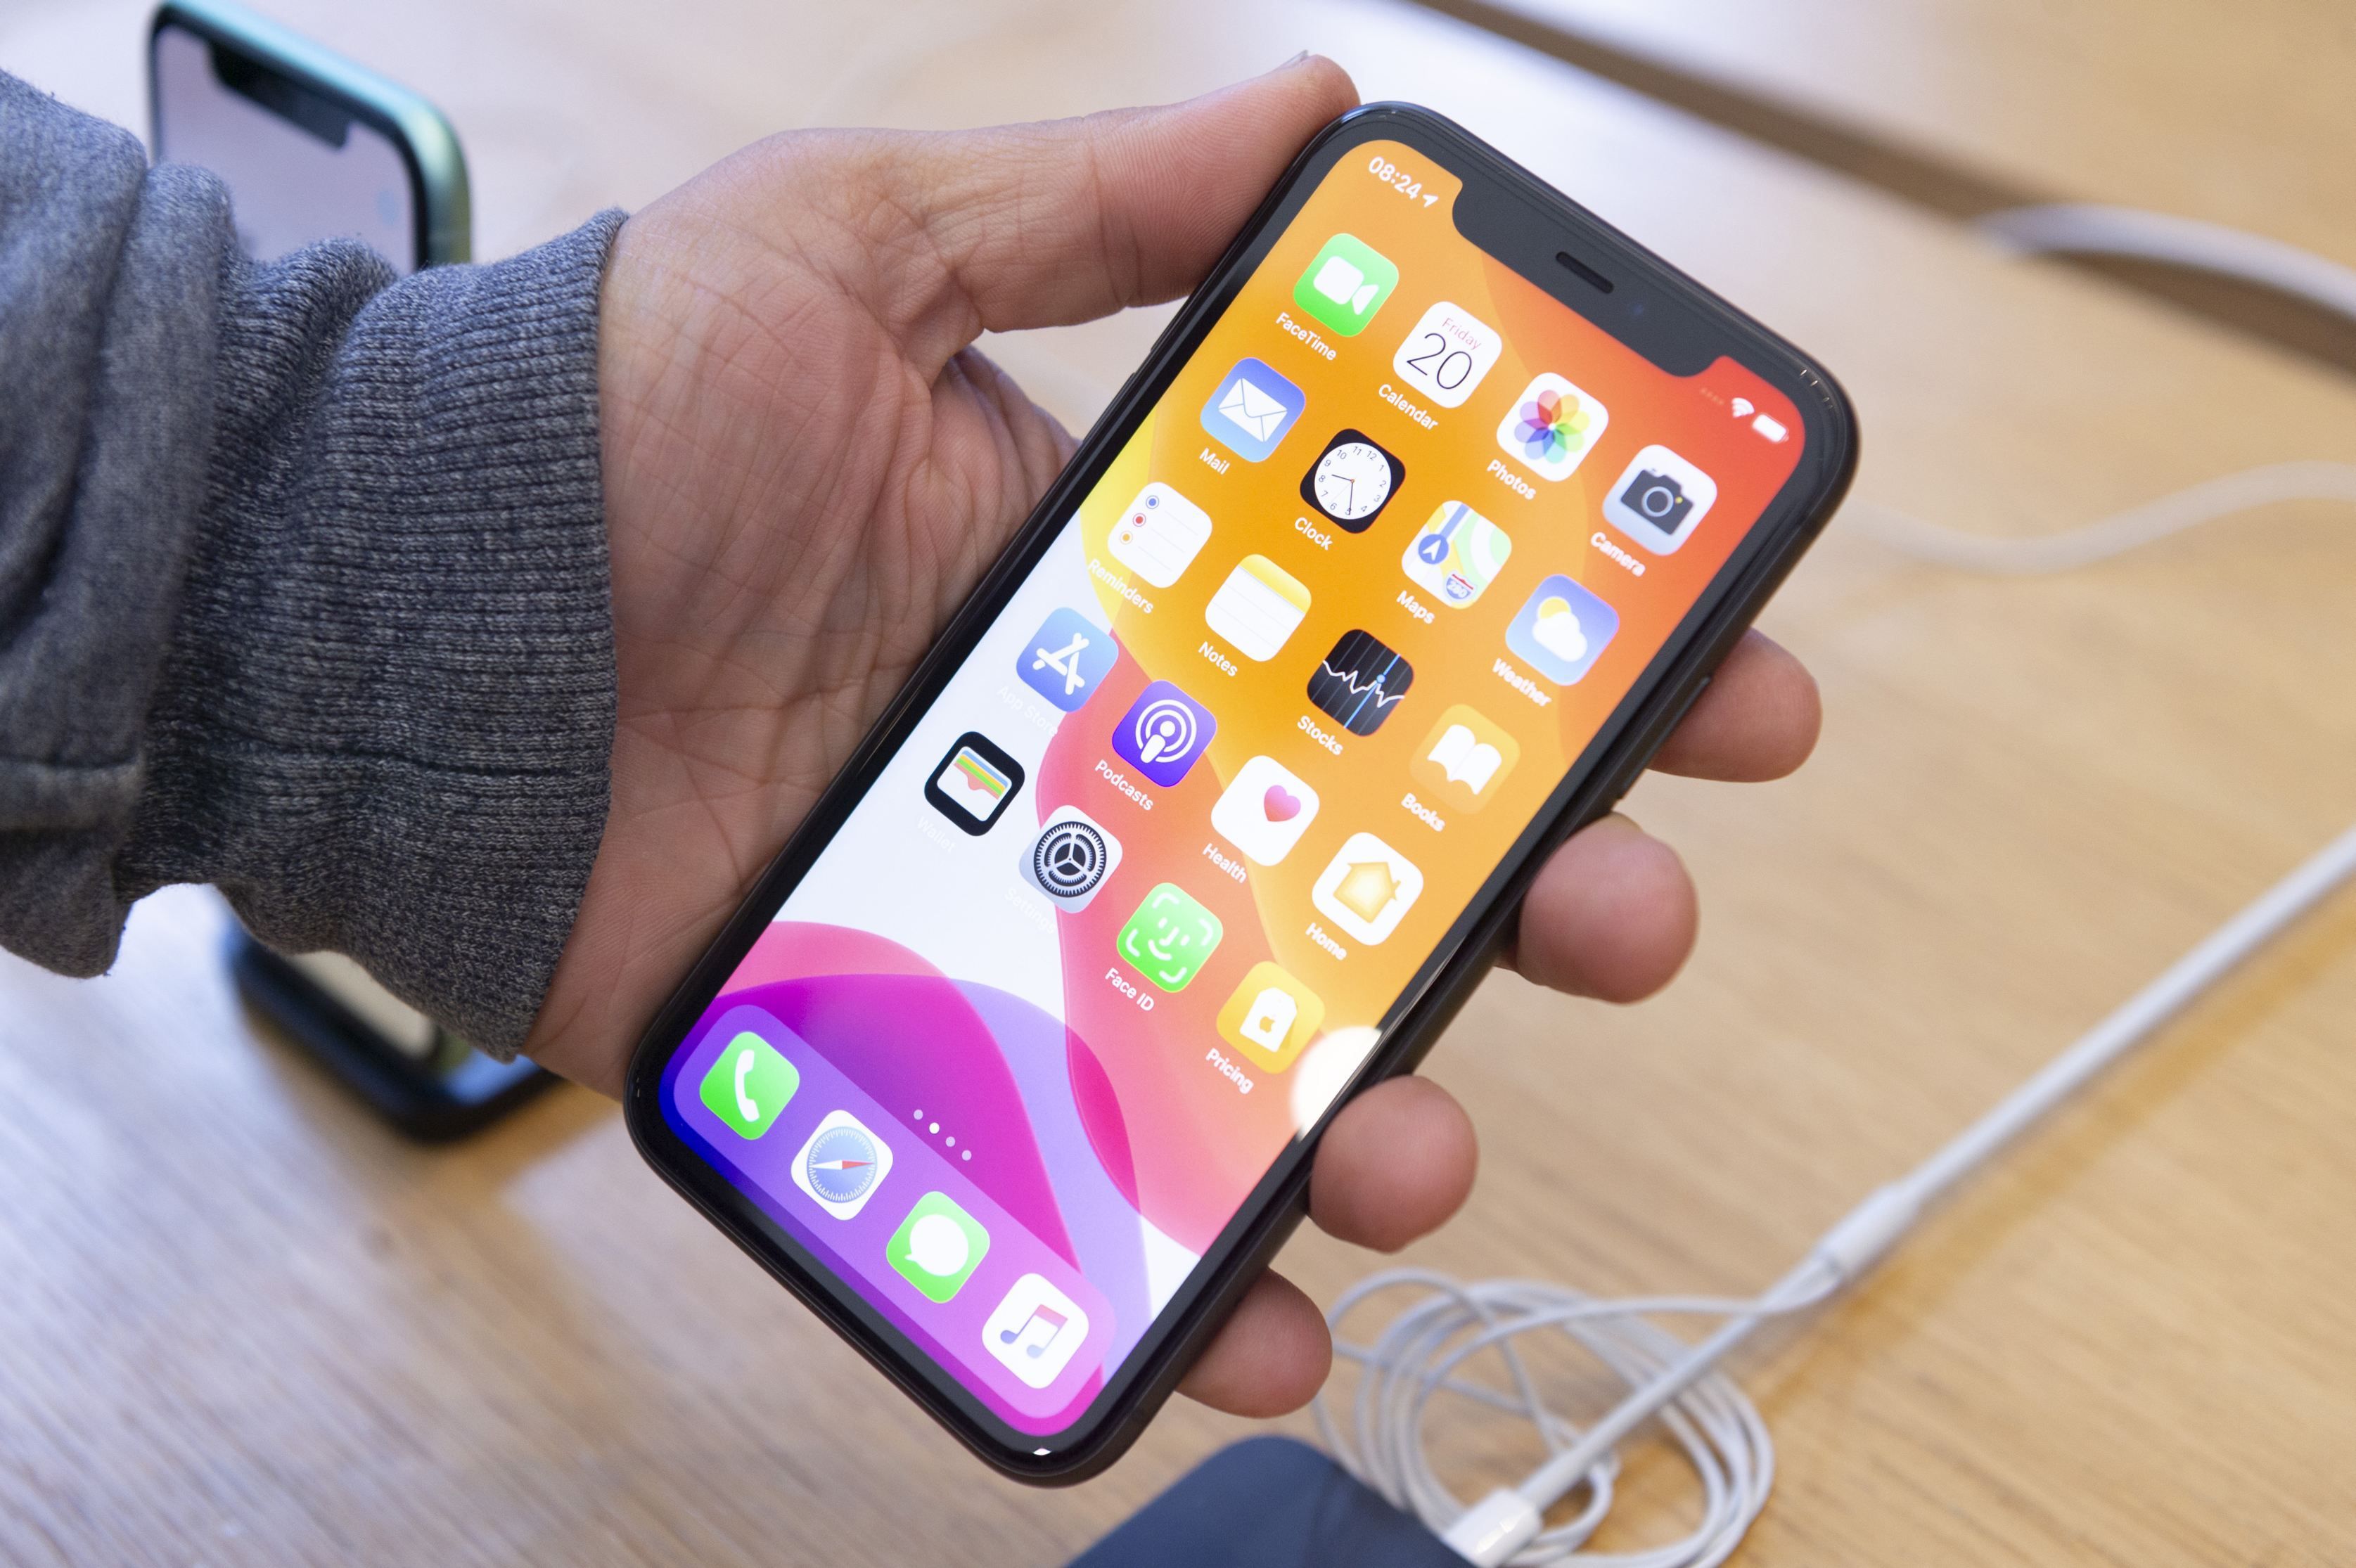 Apple a primit o amendă de 27 milioane de dolari în Franţa pentru că a încetinit intenţionat performanţele iPhone-urilor mai vechi fără a le transmite utilizatorilor